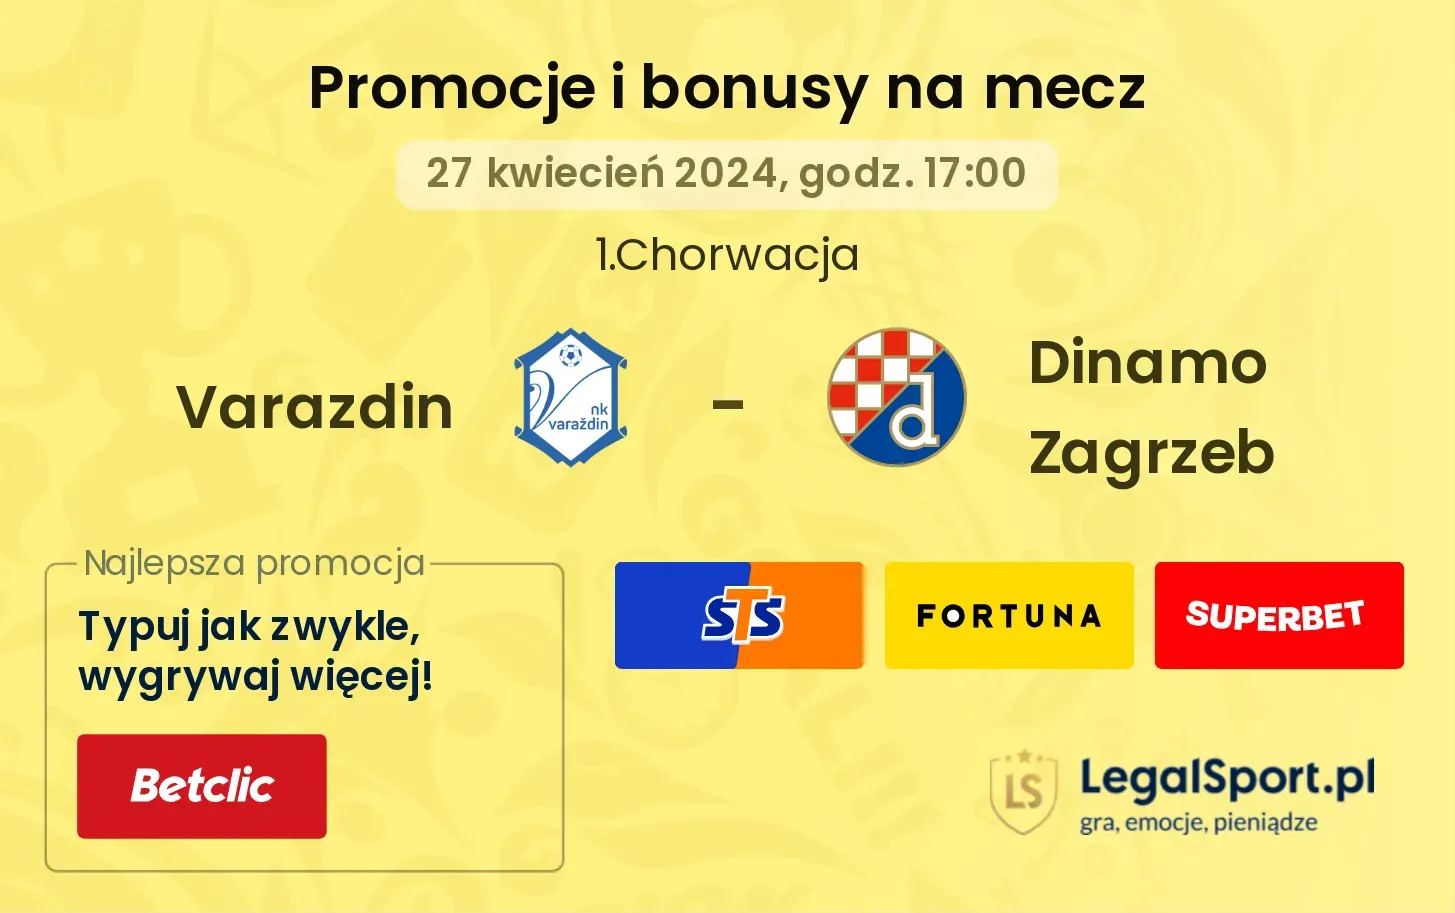 Varazdin - Dinamo Zagrzeb promocje bonusy na mecz